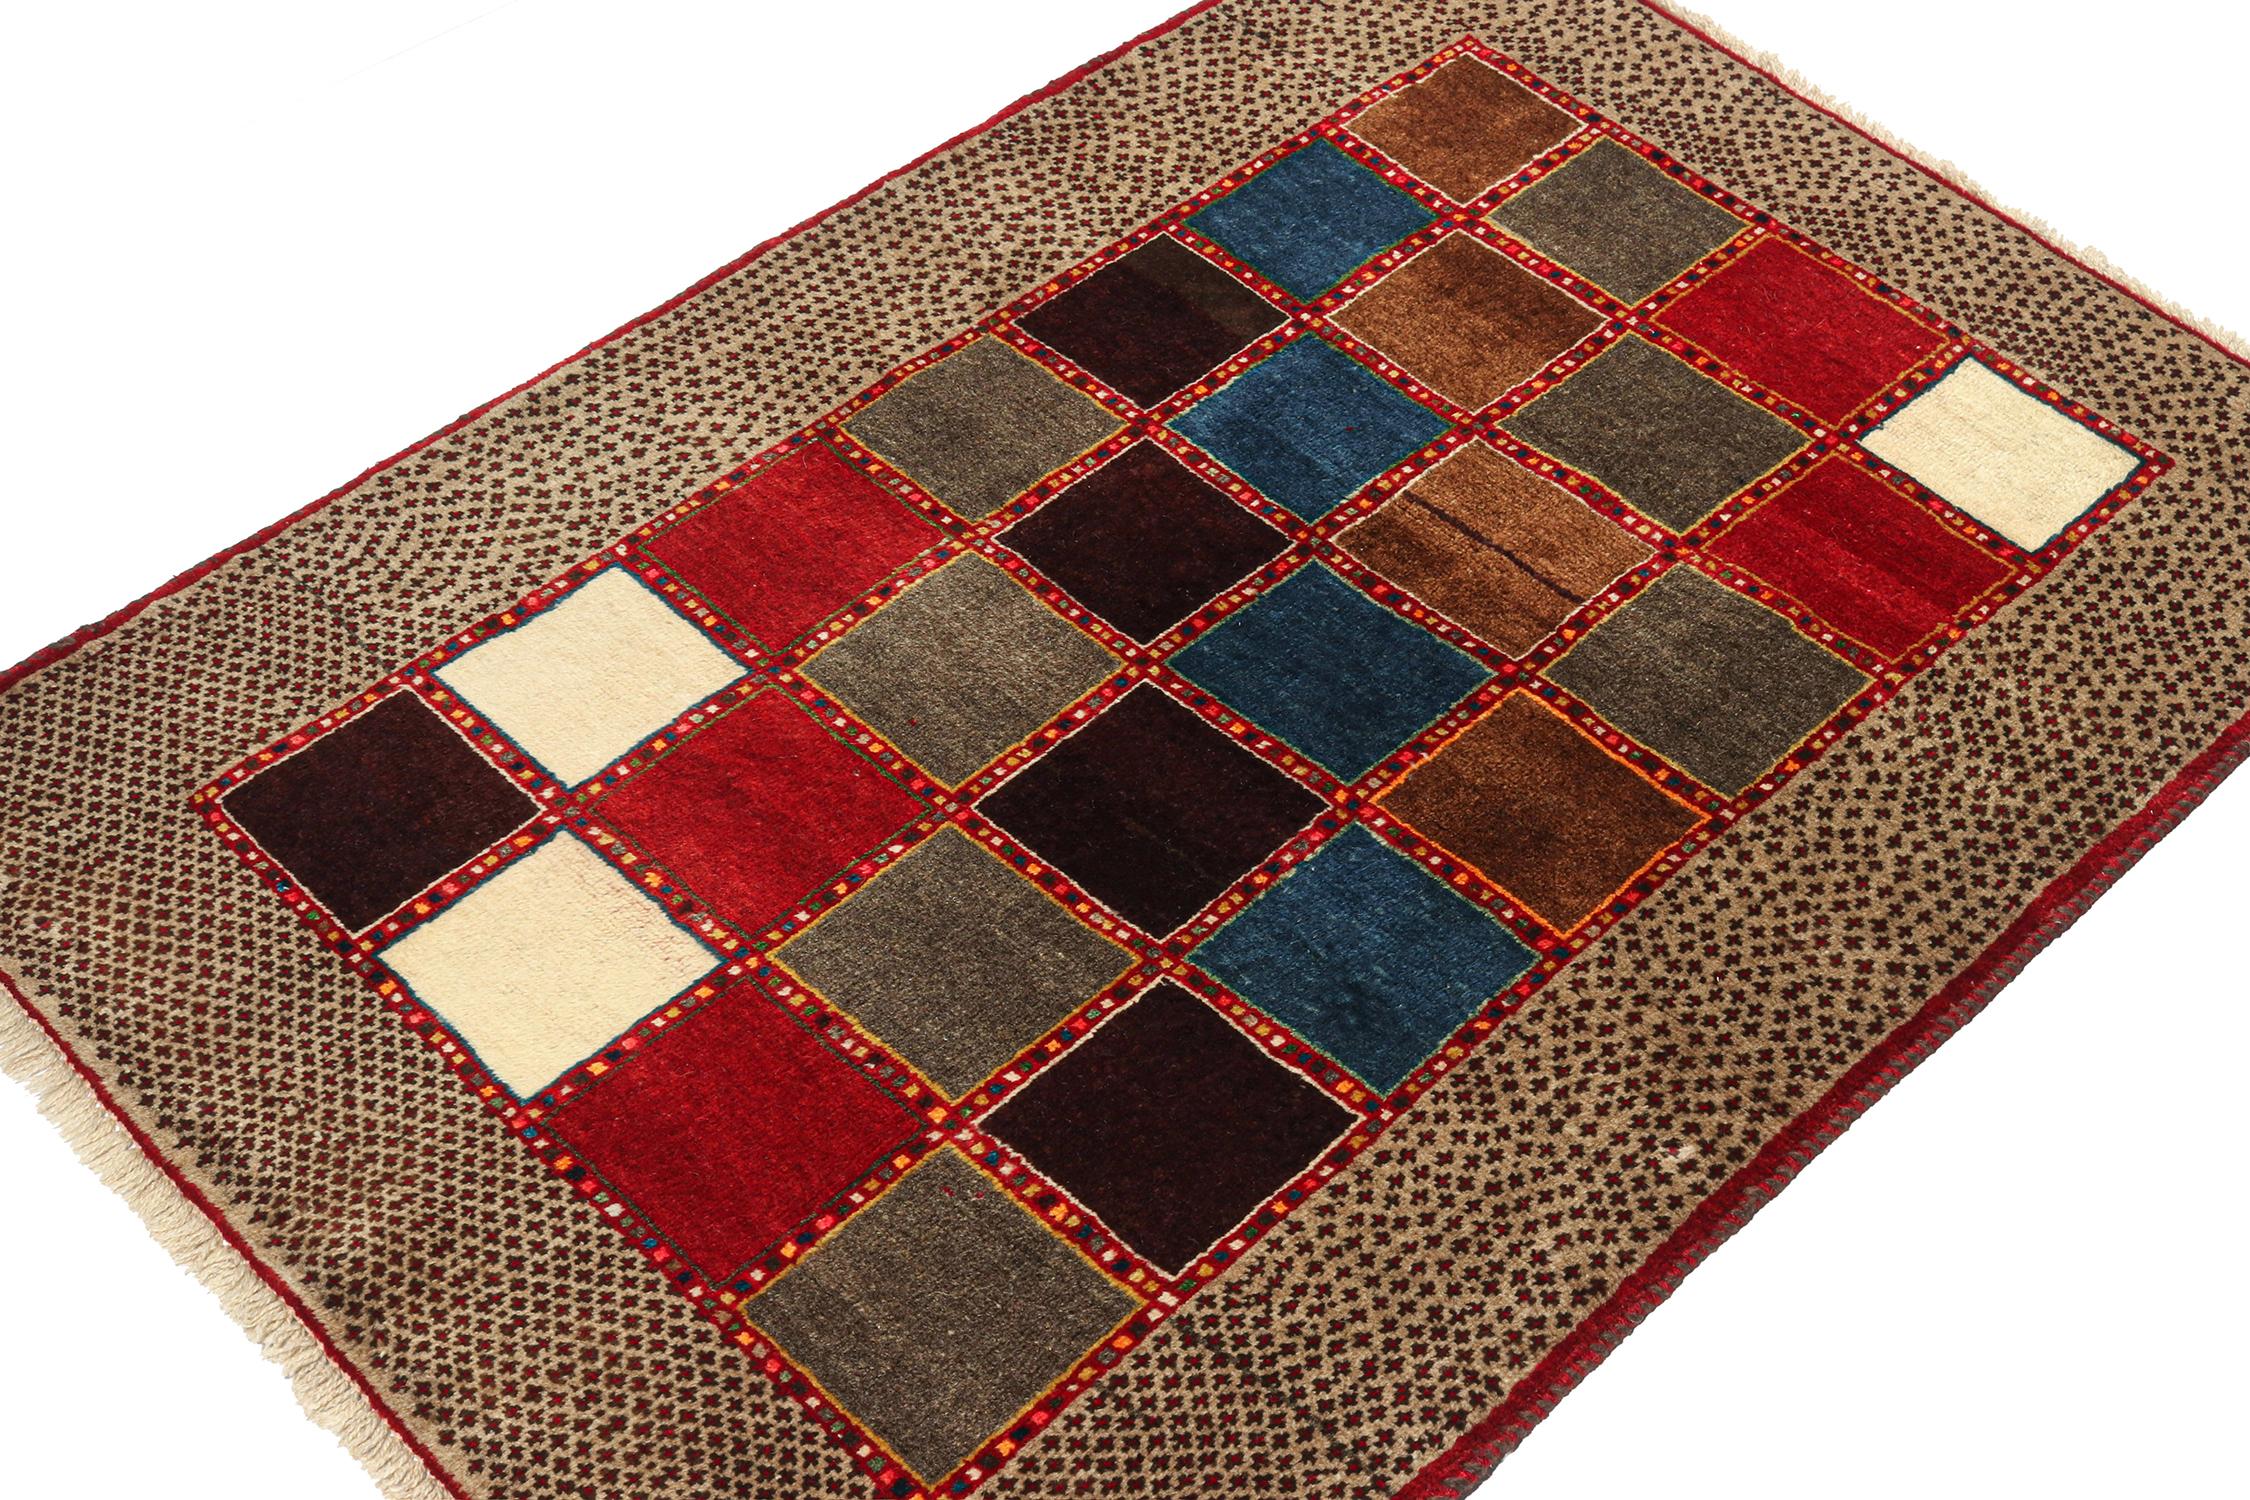 Ce tapis vintage 3x5 persan Gabbeh constitue une entrée splendide dans la collection de pièces tribales rares de Rug & Kilim. Noué à la main en laine, vers 1950-1960.

Sur le design :

La pièce présente un motif géométrique ludique dans une